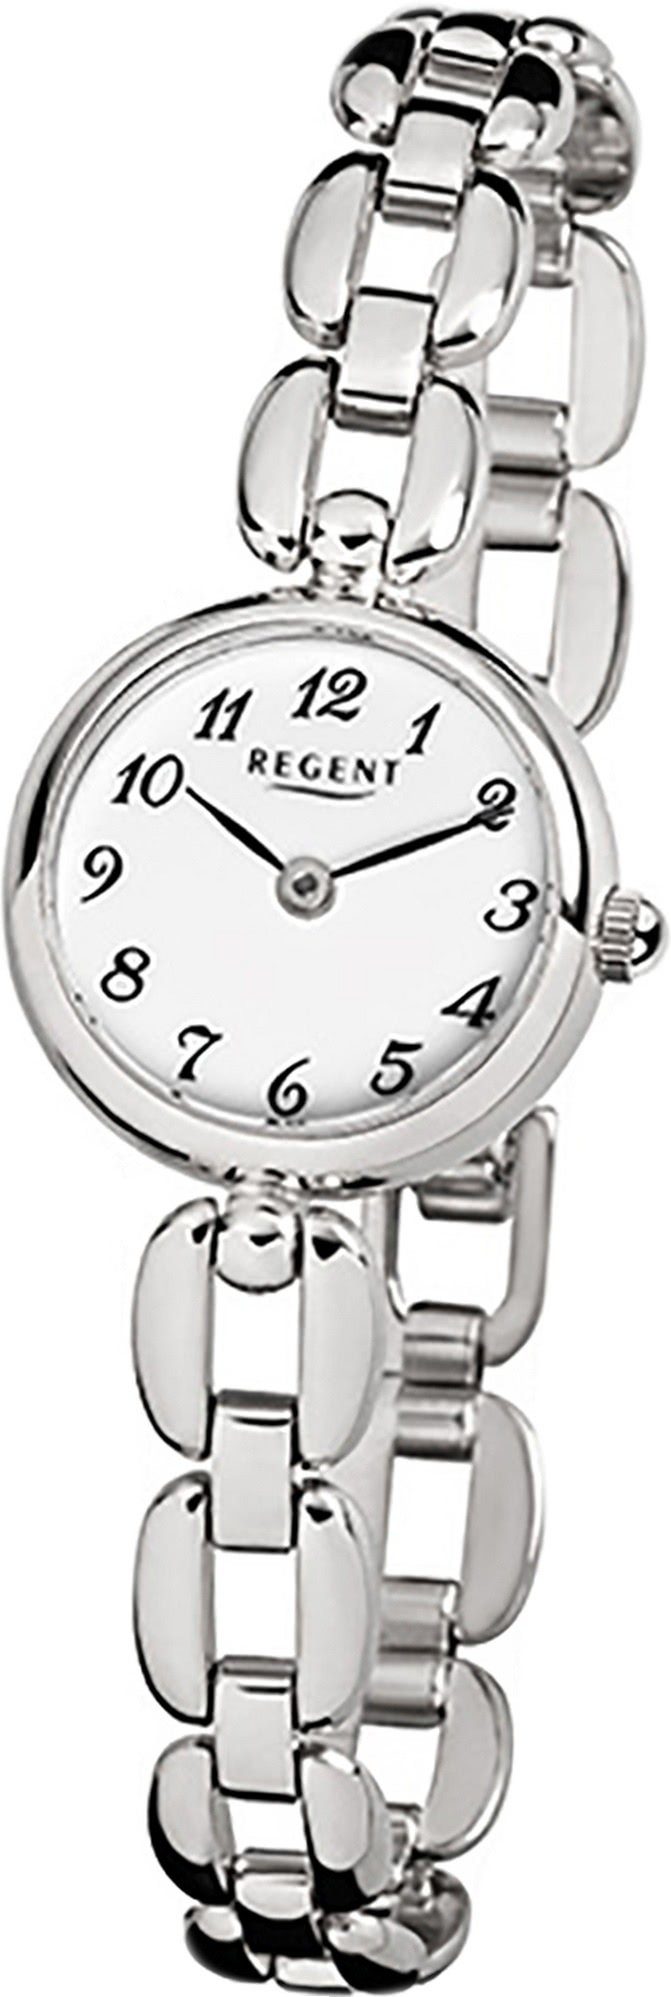 Regent Quarzuhr Regent Edelstahl Damen Uhr F-802 Quarzuhr, Damenuhr Edelstahlarmband silber, rundes Gehäuse, klein (ca. 20mm)